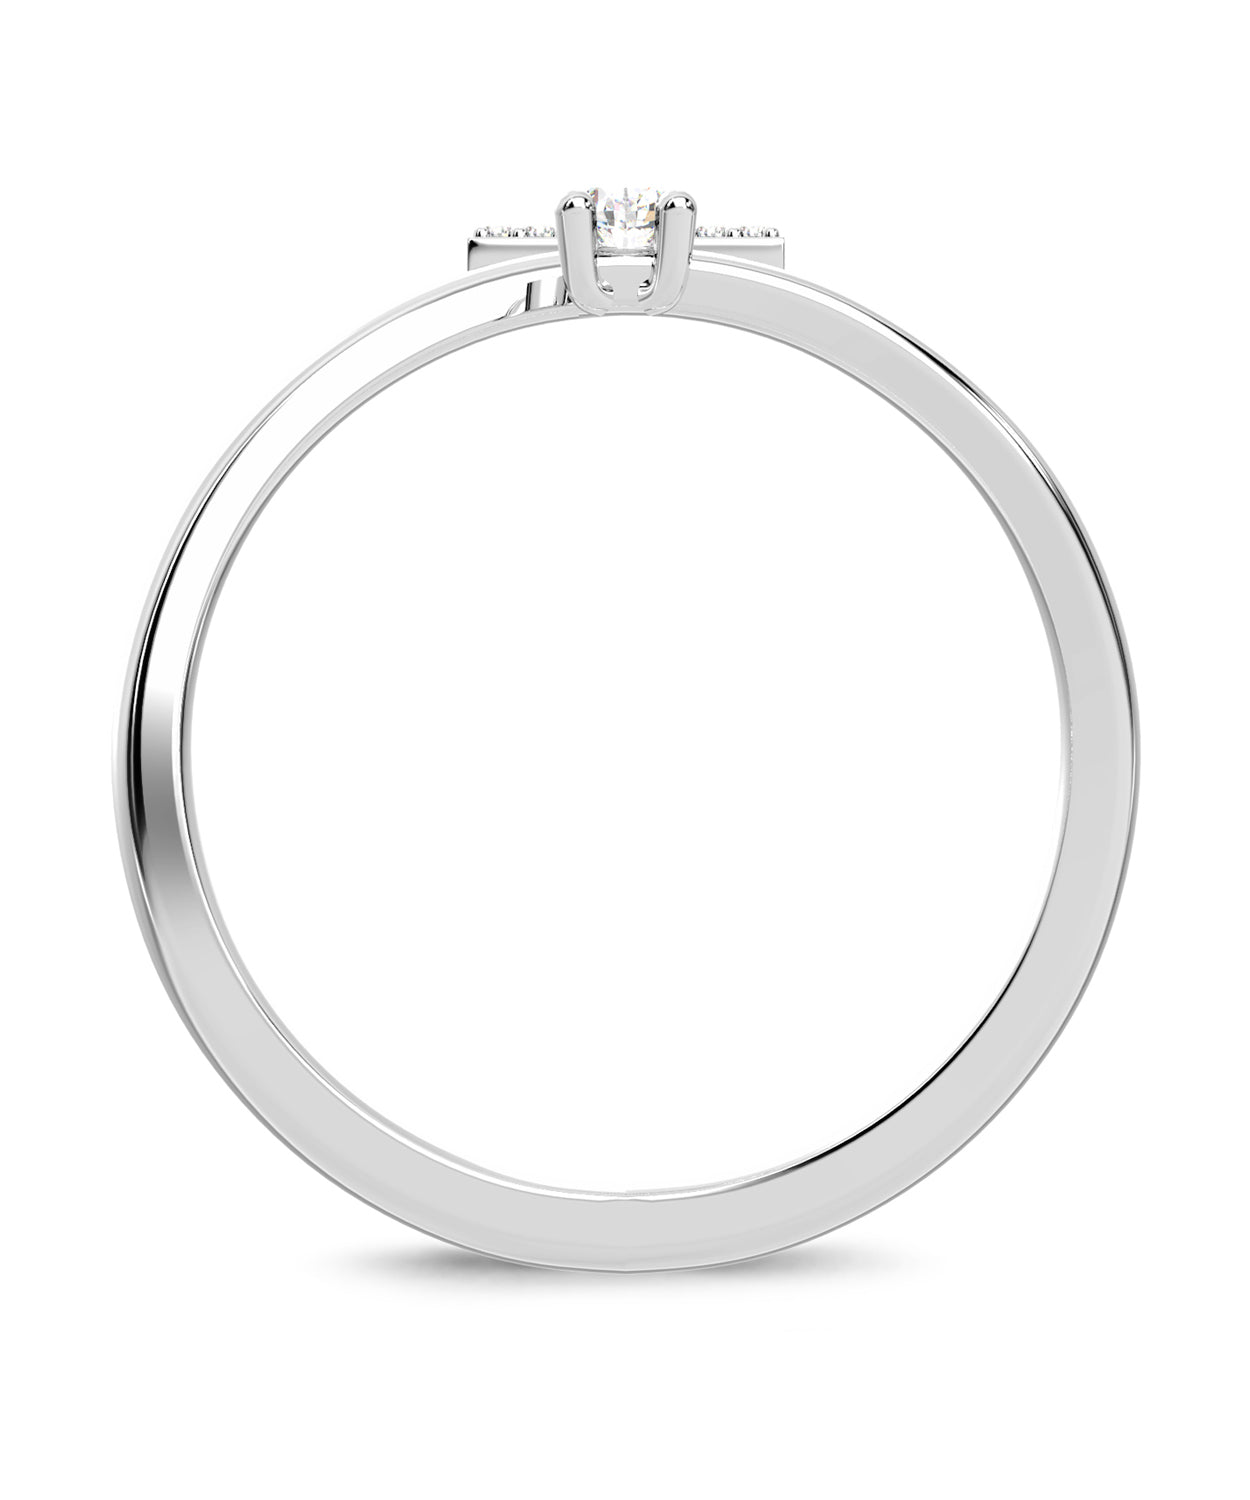 ESEMCO Diamond 18k White Gold Letter T Initial Open Ring View 2